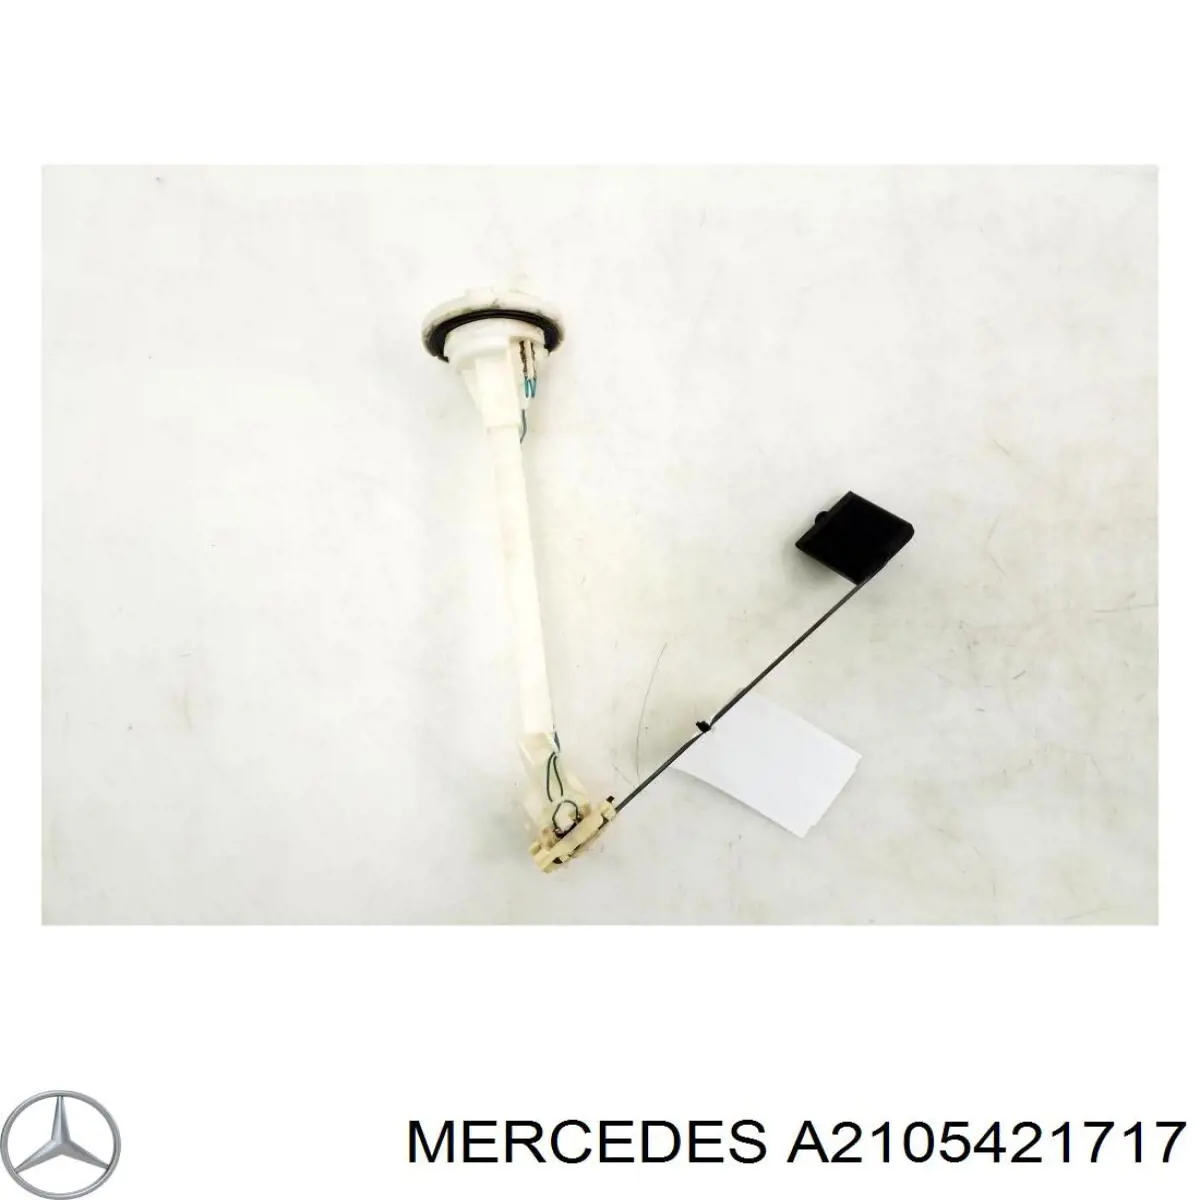 2105422717 Mercedes датчик уровня топлива в баке